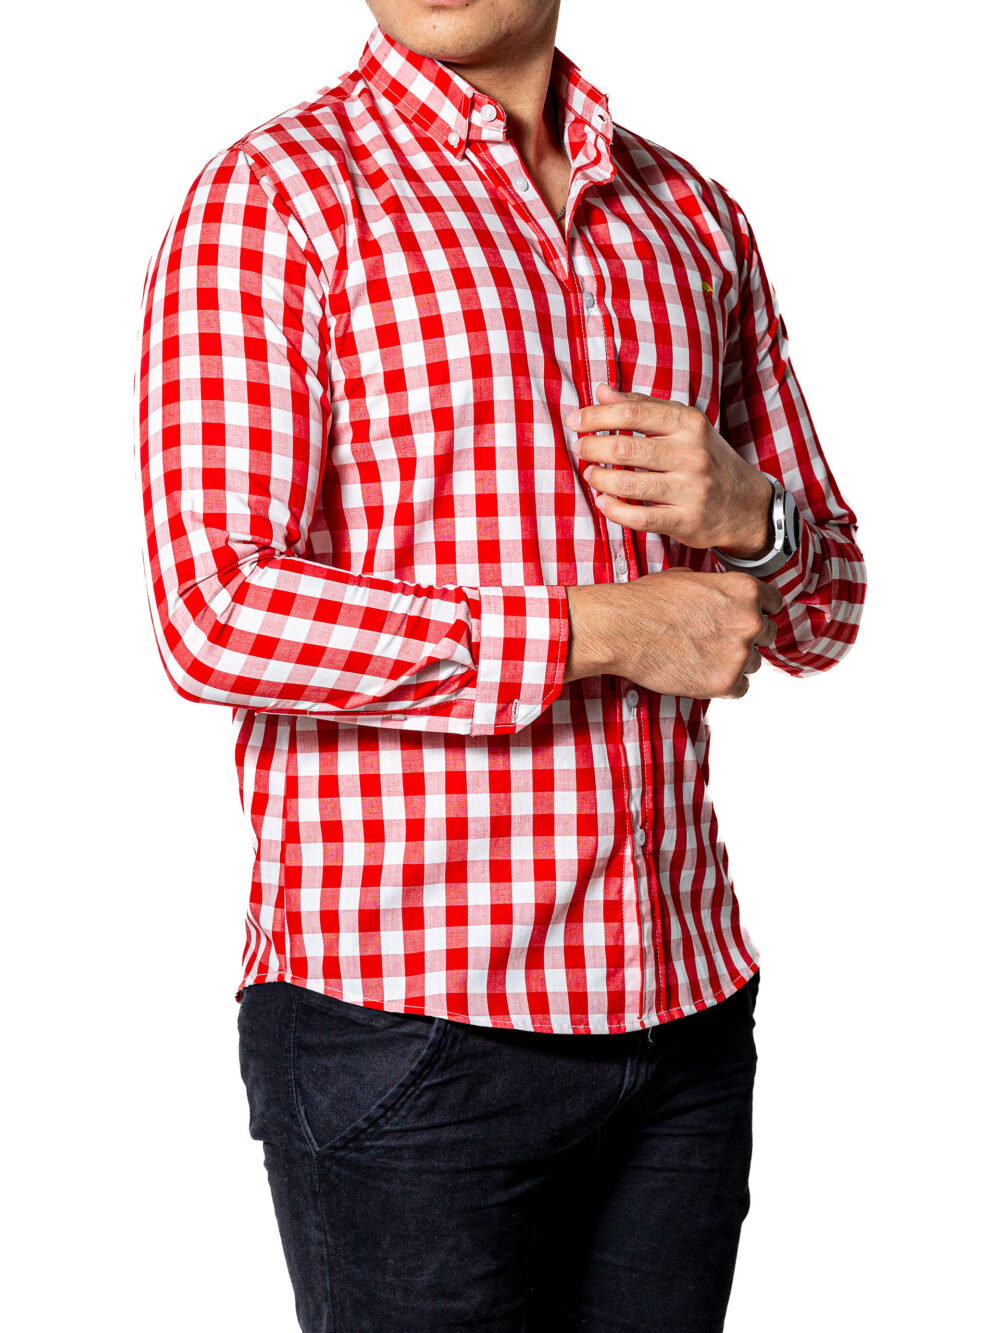 Camisa Hombre Casual Slim Fit Cuadros Rojos, Blancos 004 3